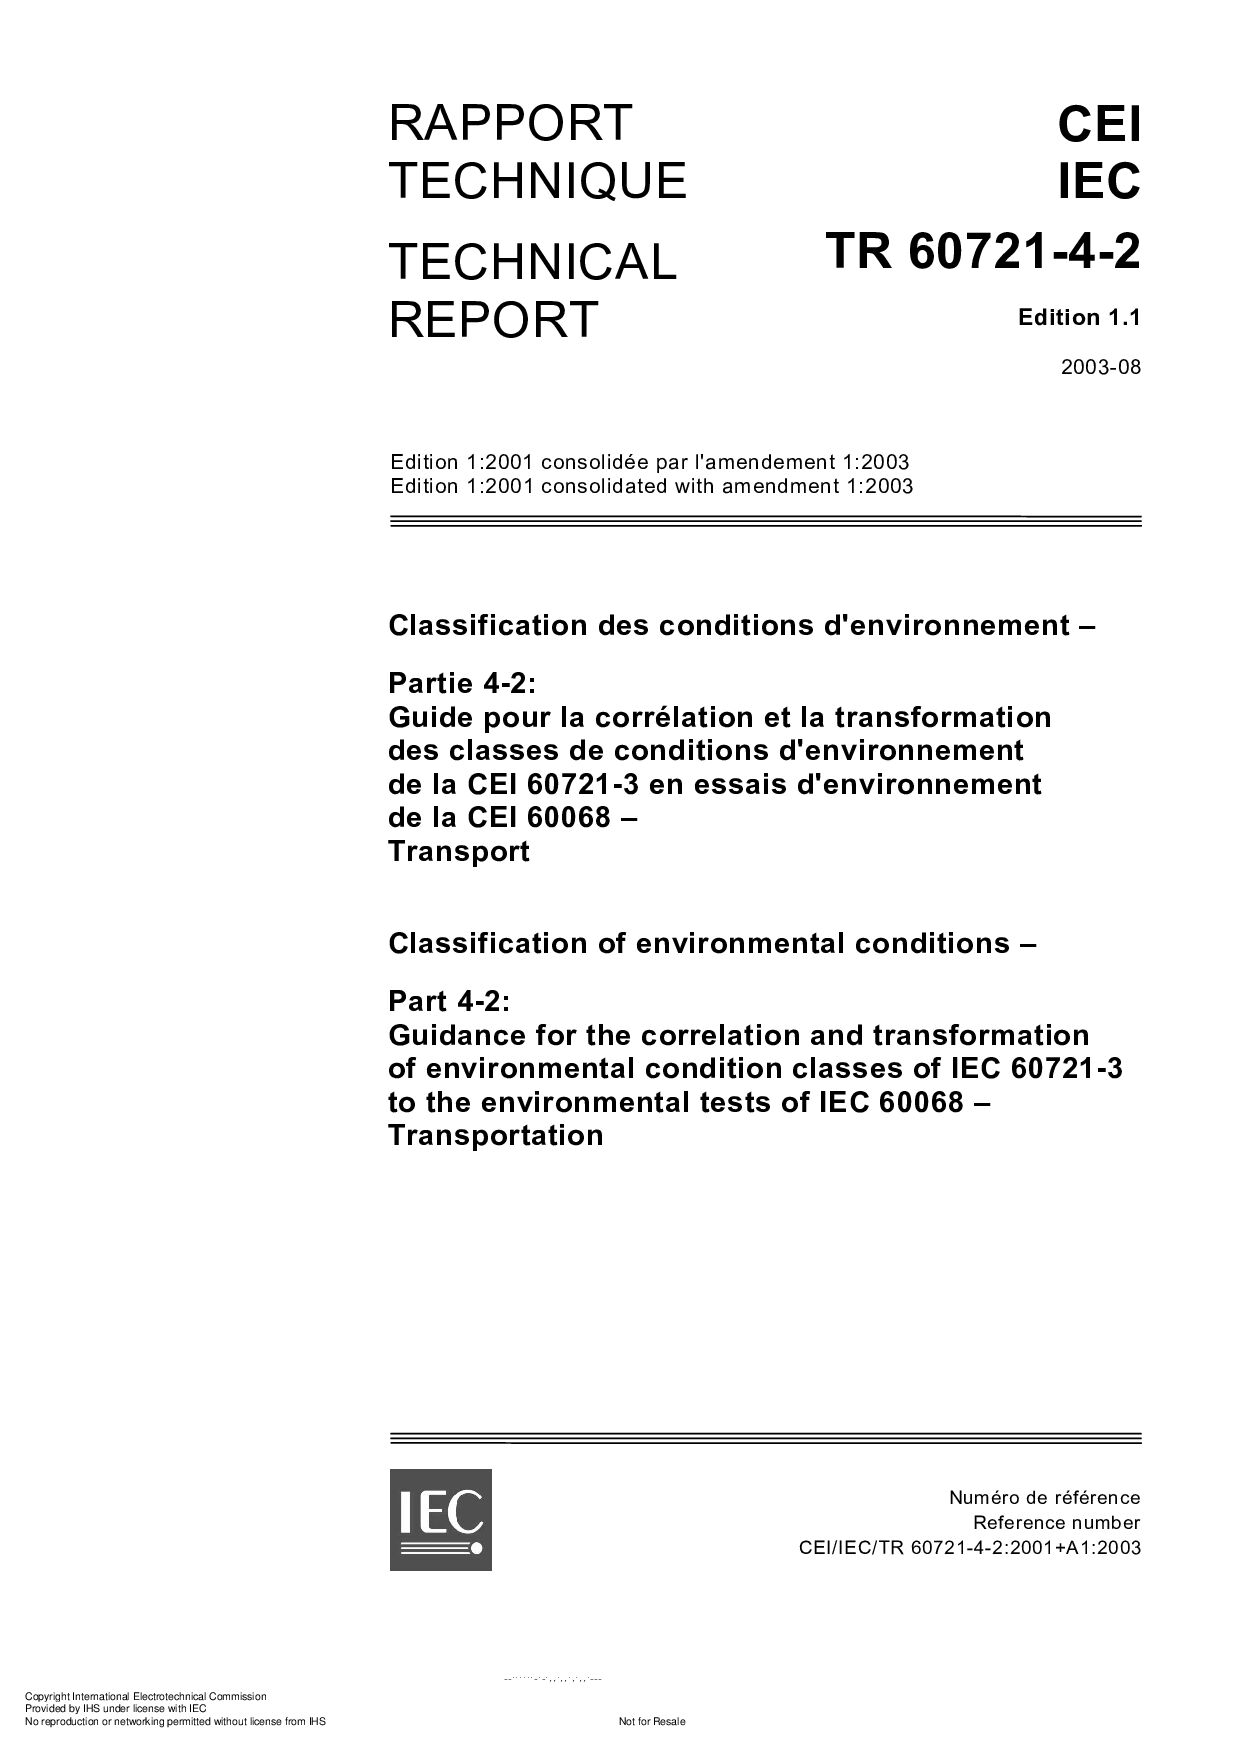 IEC TR 60721-4-2:2003